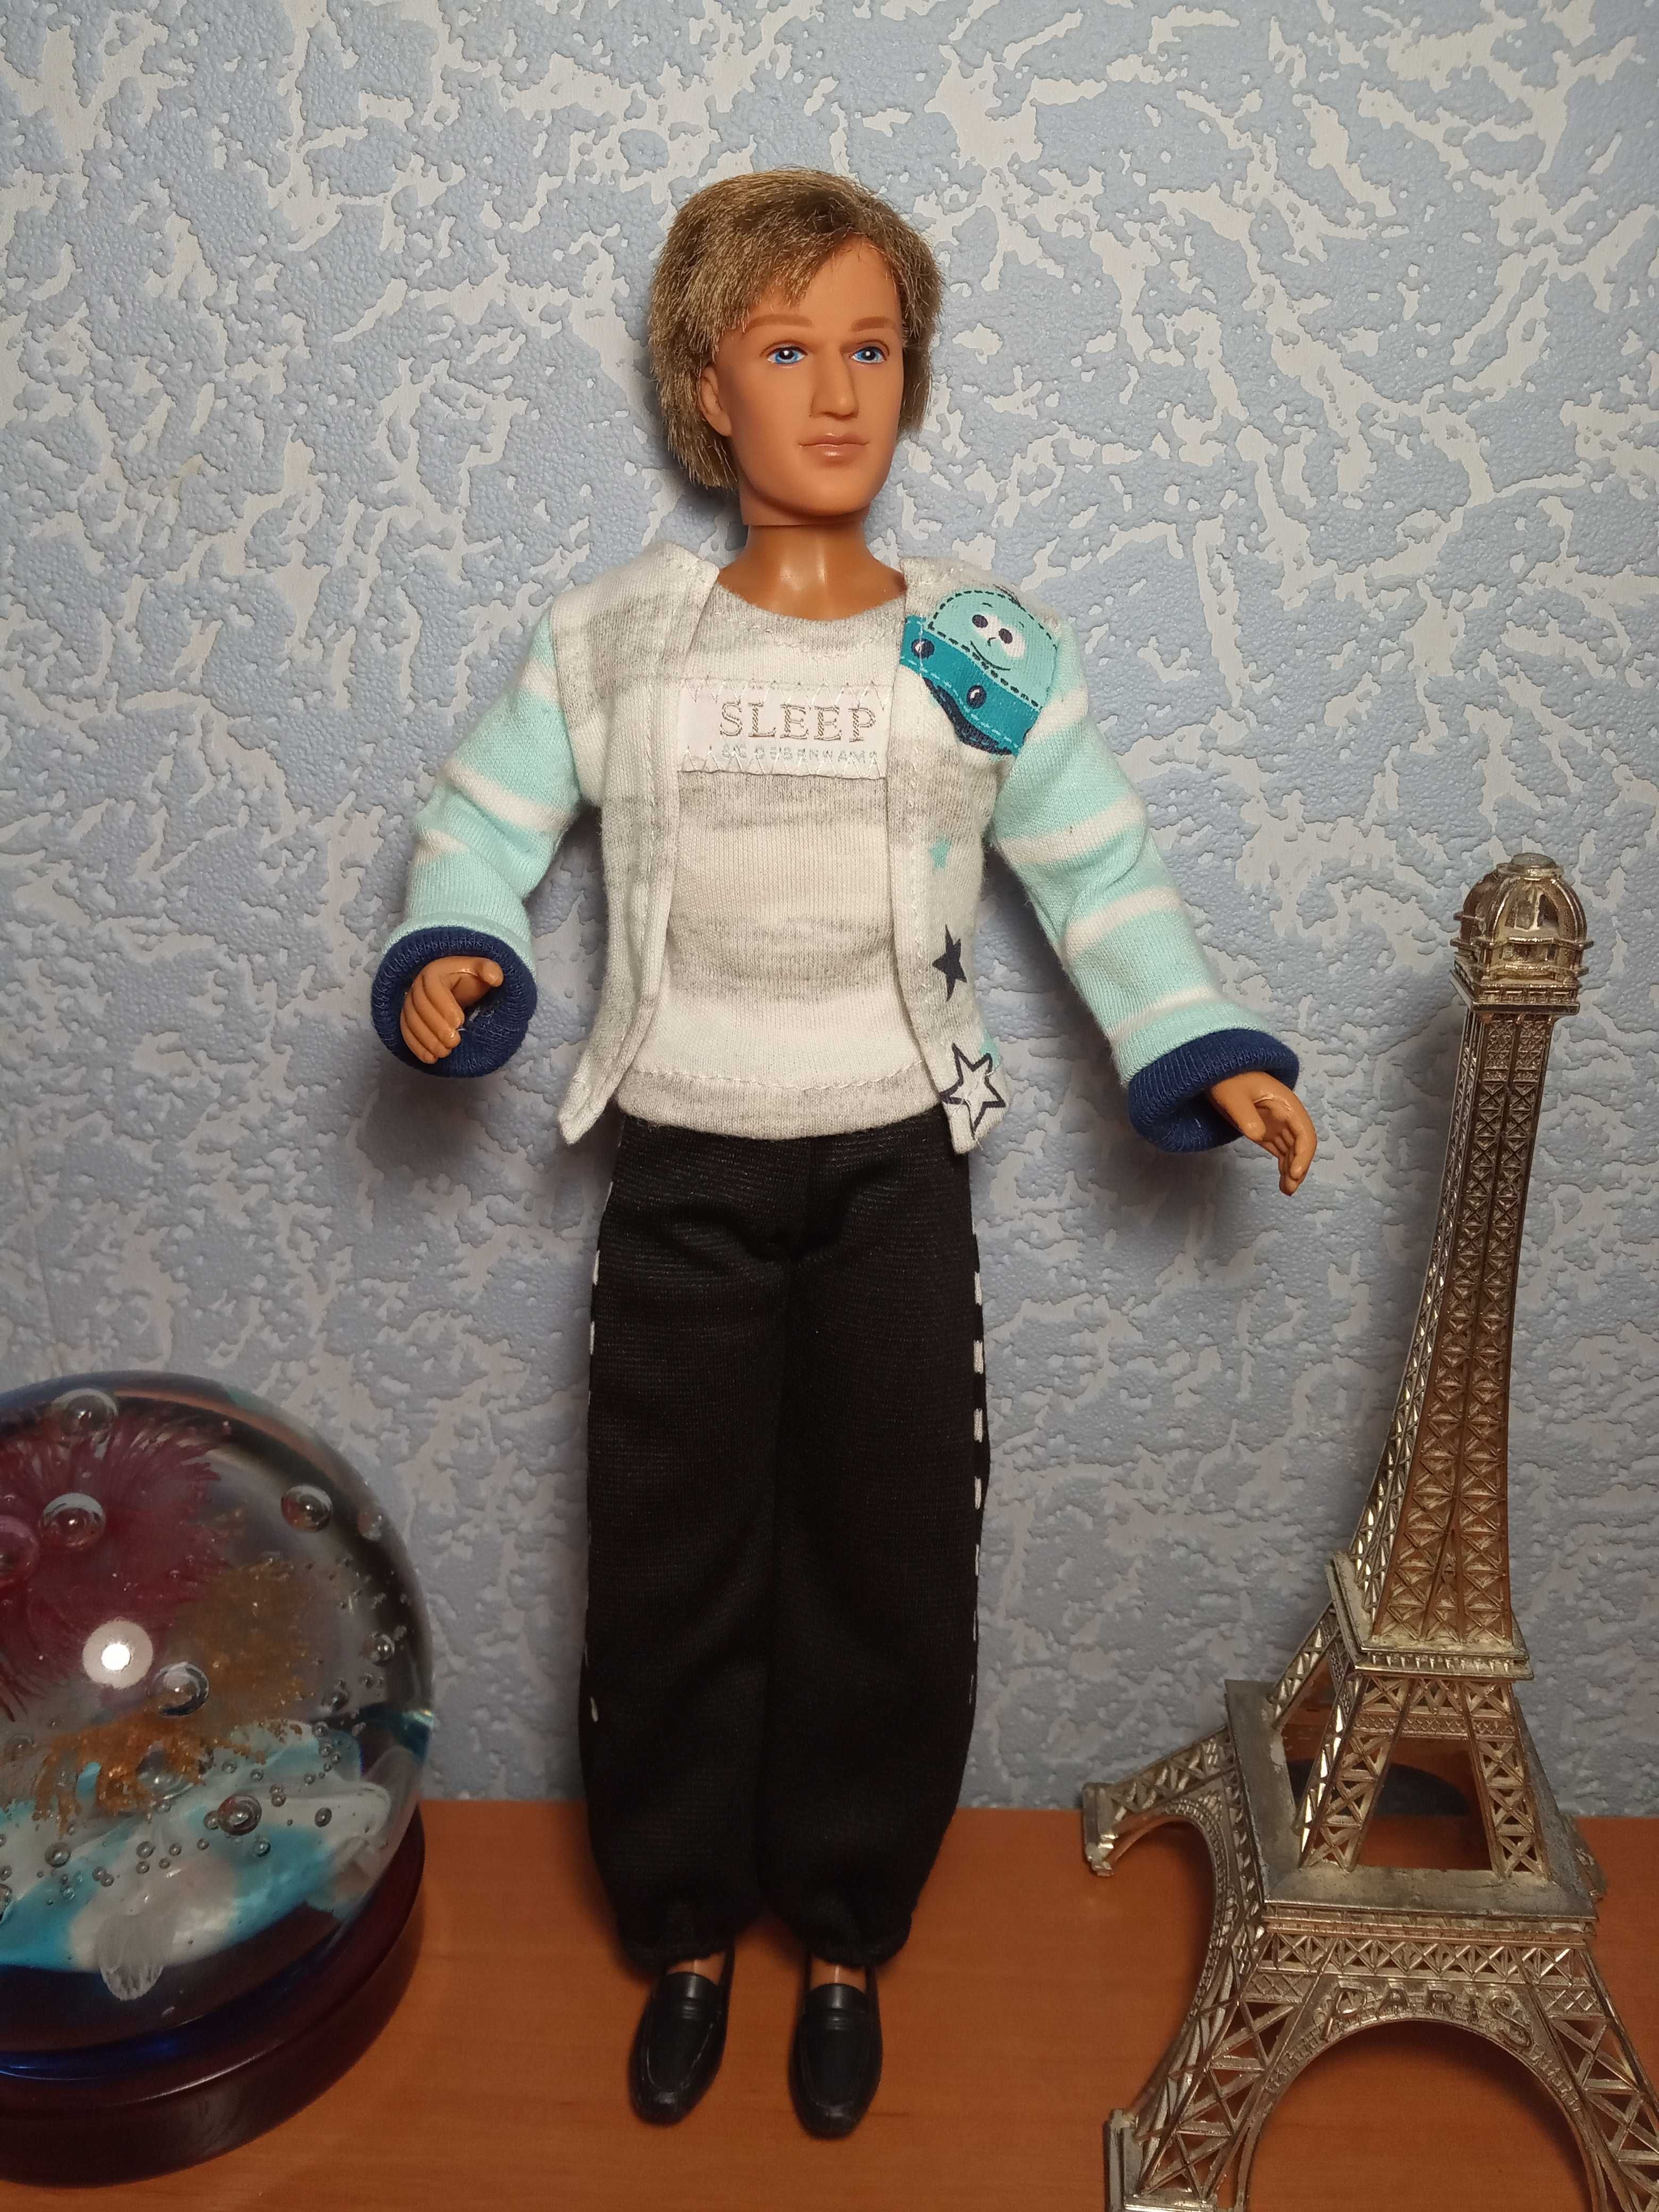 Качественная кукла Кен Со, 31 см, друг Барби, в одежде и обуви